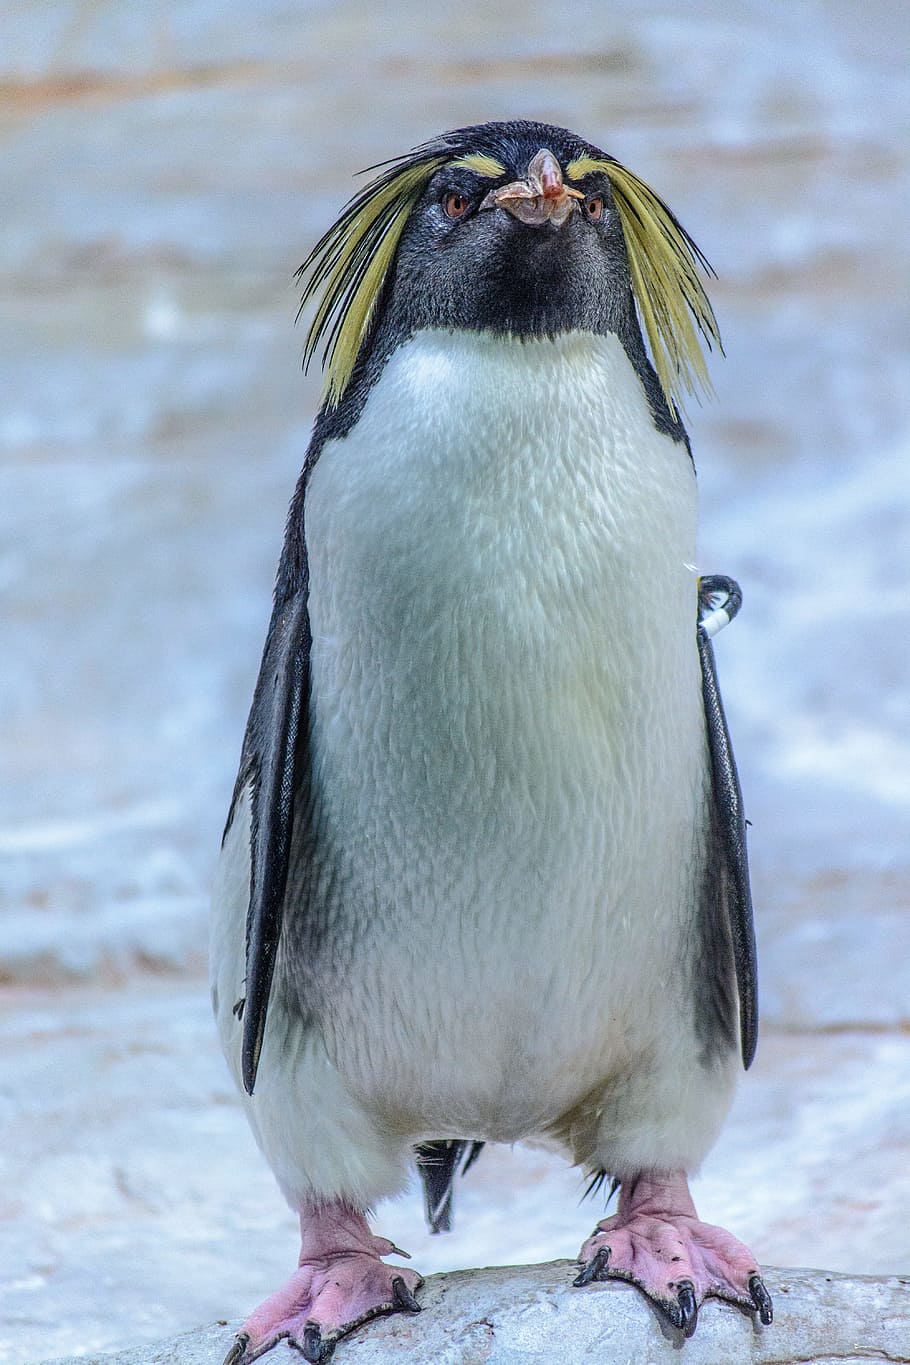 белый пингвин, пингвин, животное, птица, животный мир, зоопарк, билл, водная птица, фотография дикой природы, близко